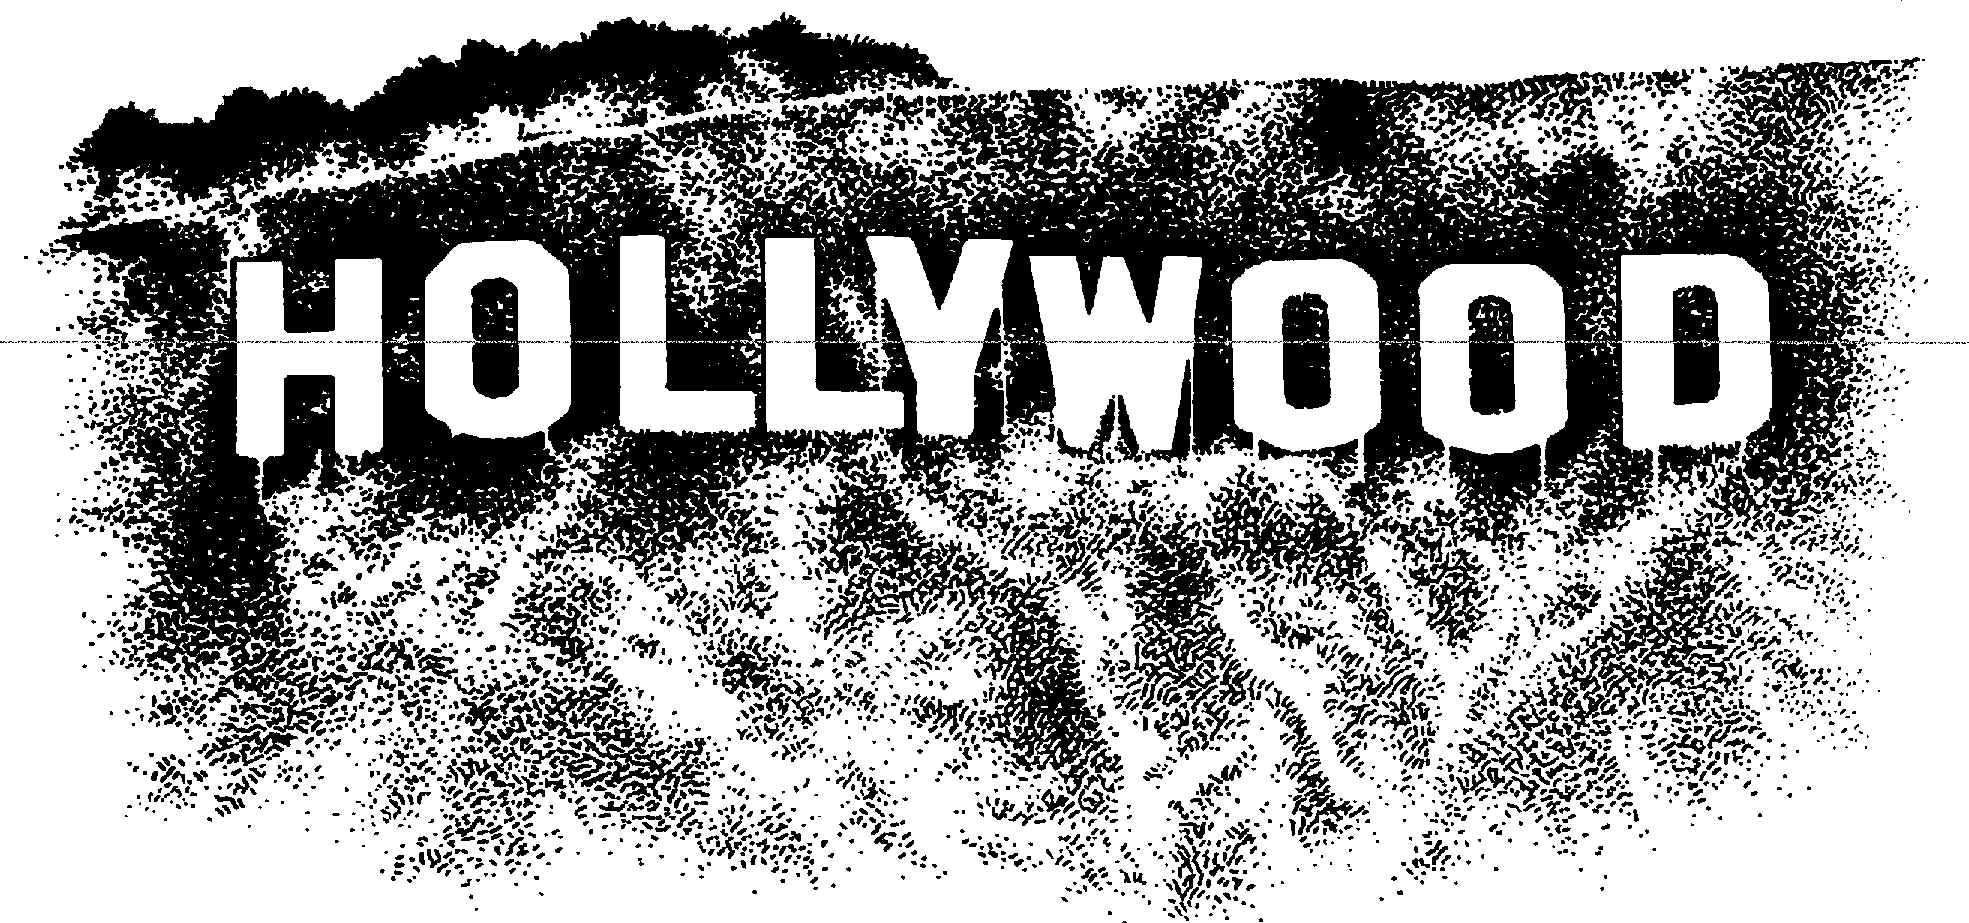 Hollywood Clipart Border 